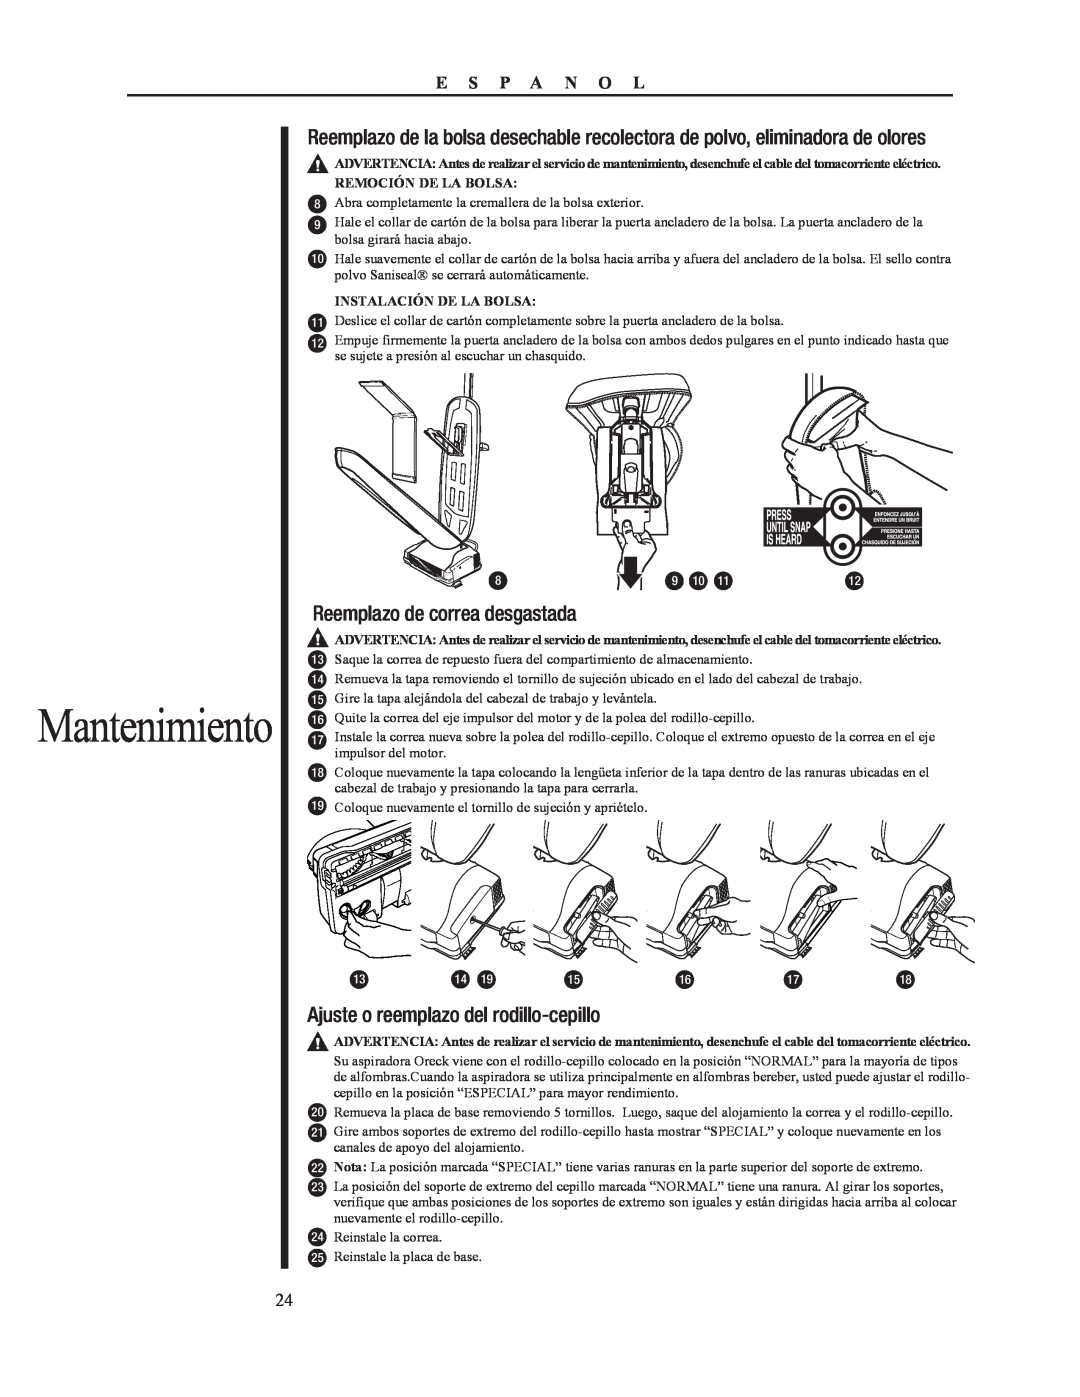 Oreck 79053-01REVA manual Mantenimiento, Ajuste o reemplazo del rodillo-cepillo 